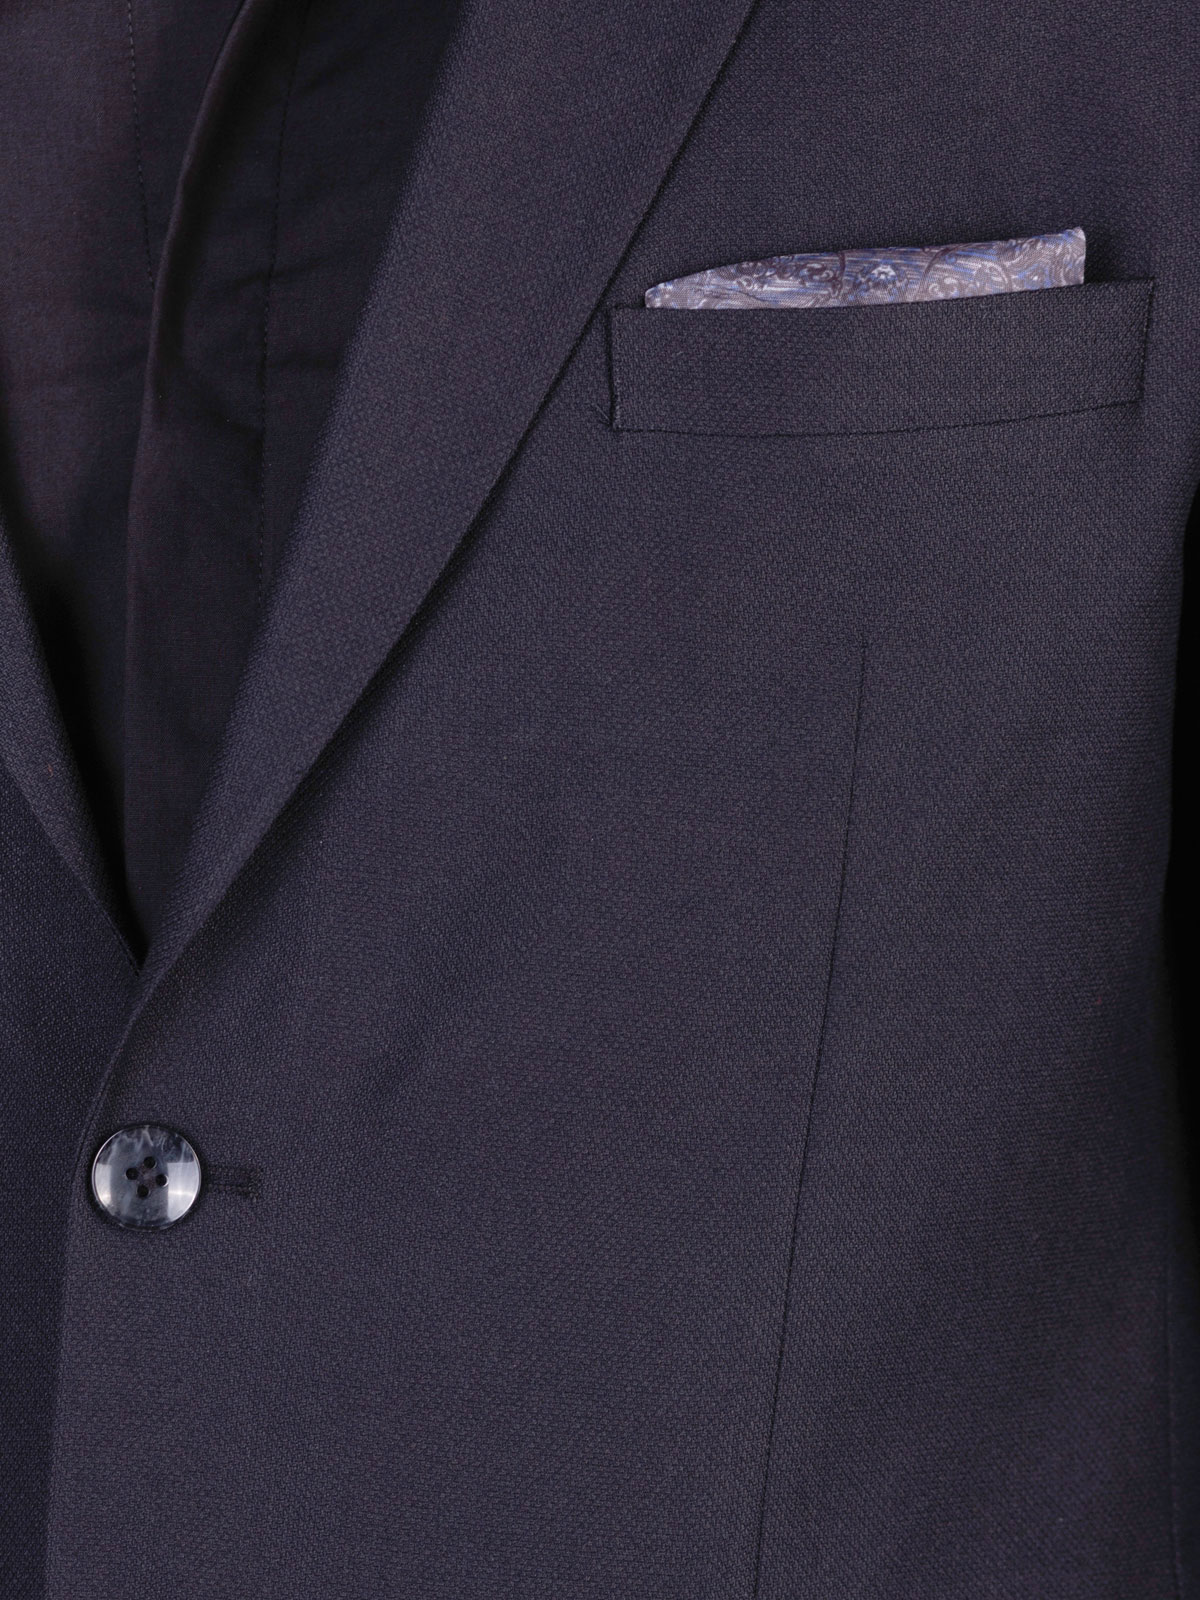 Κομψό ανδρικό μαύρο κοστούμι - 68070 € 212.60 img4